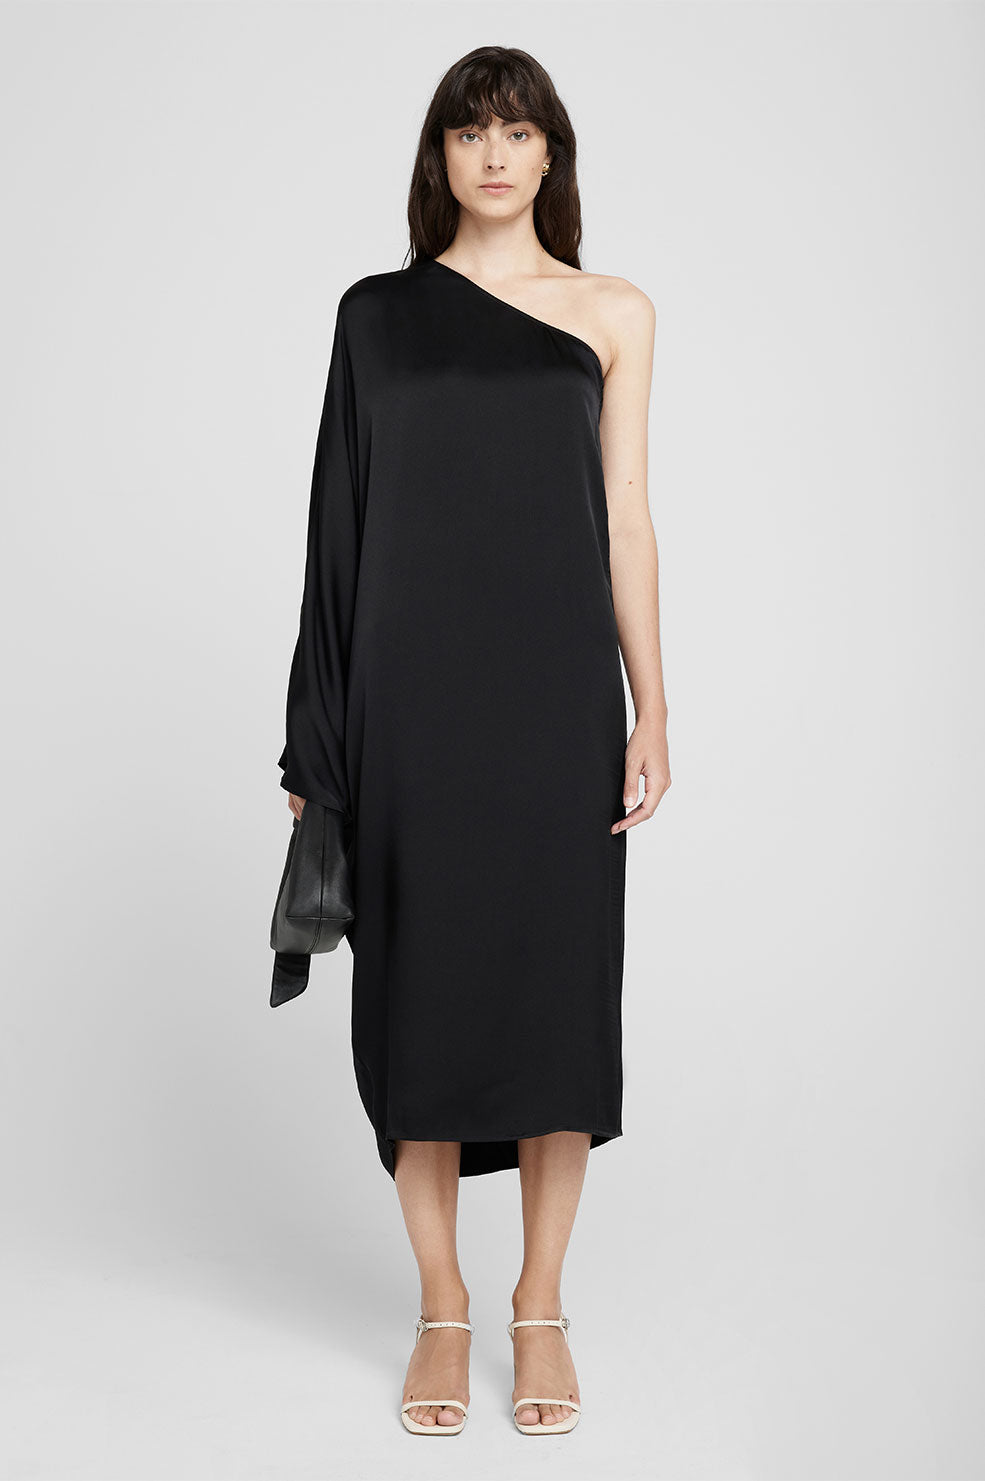 ANINE BING Rowan Dress - Black - On Model Front